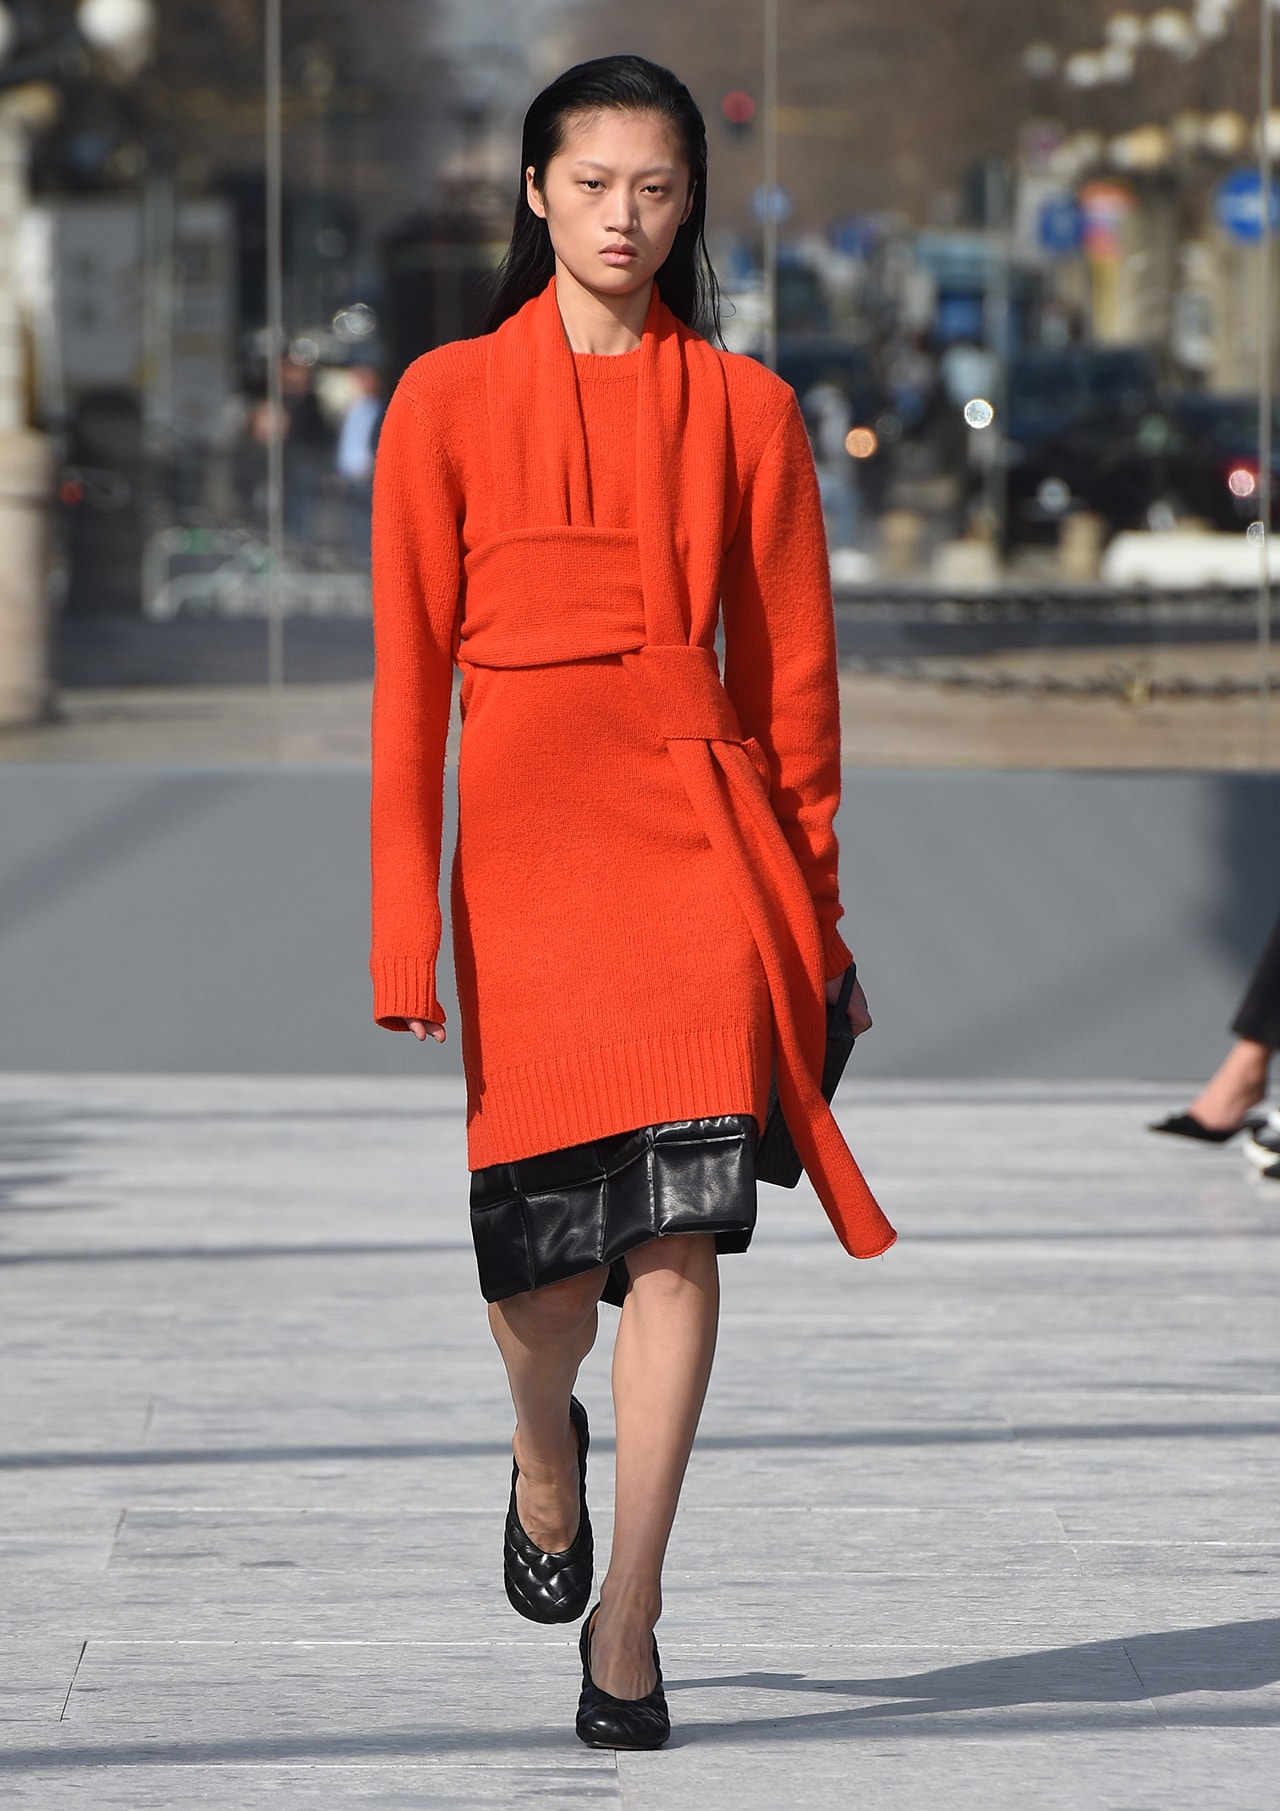 Bottega Veneta Milan Fashion Week Fall Winter 2019 FW19 Daniel Lee Debut Runway Show red orange sweater dress